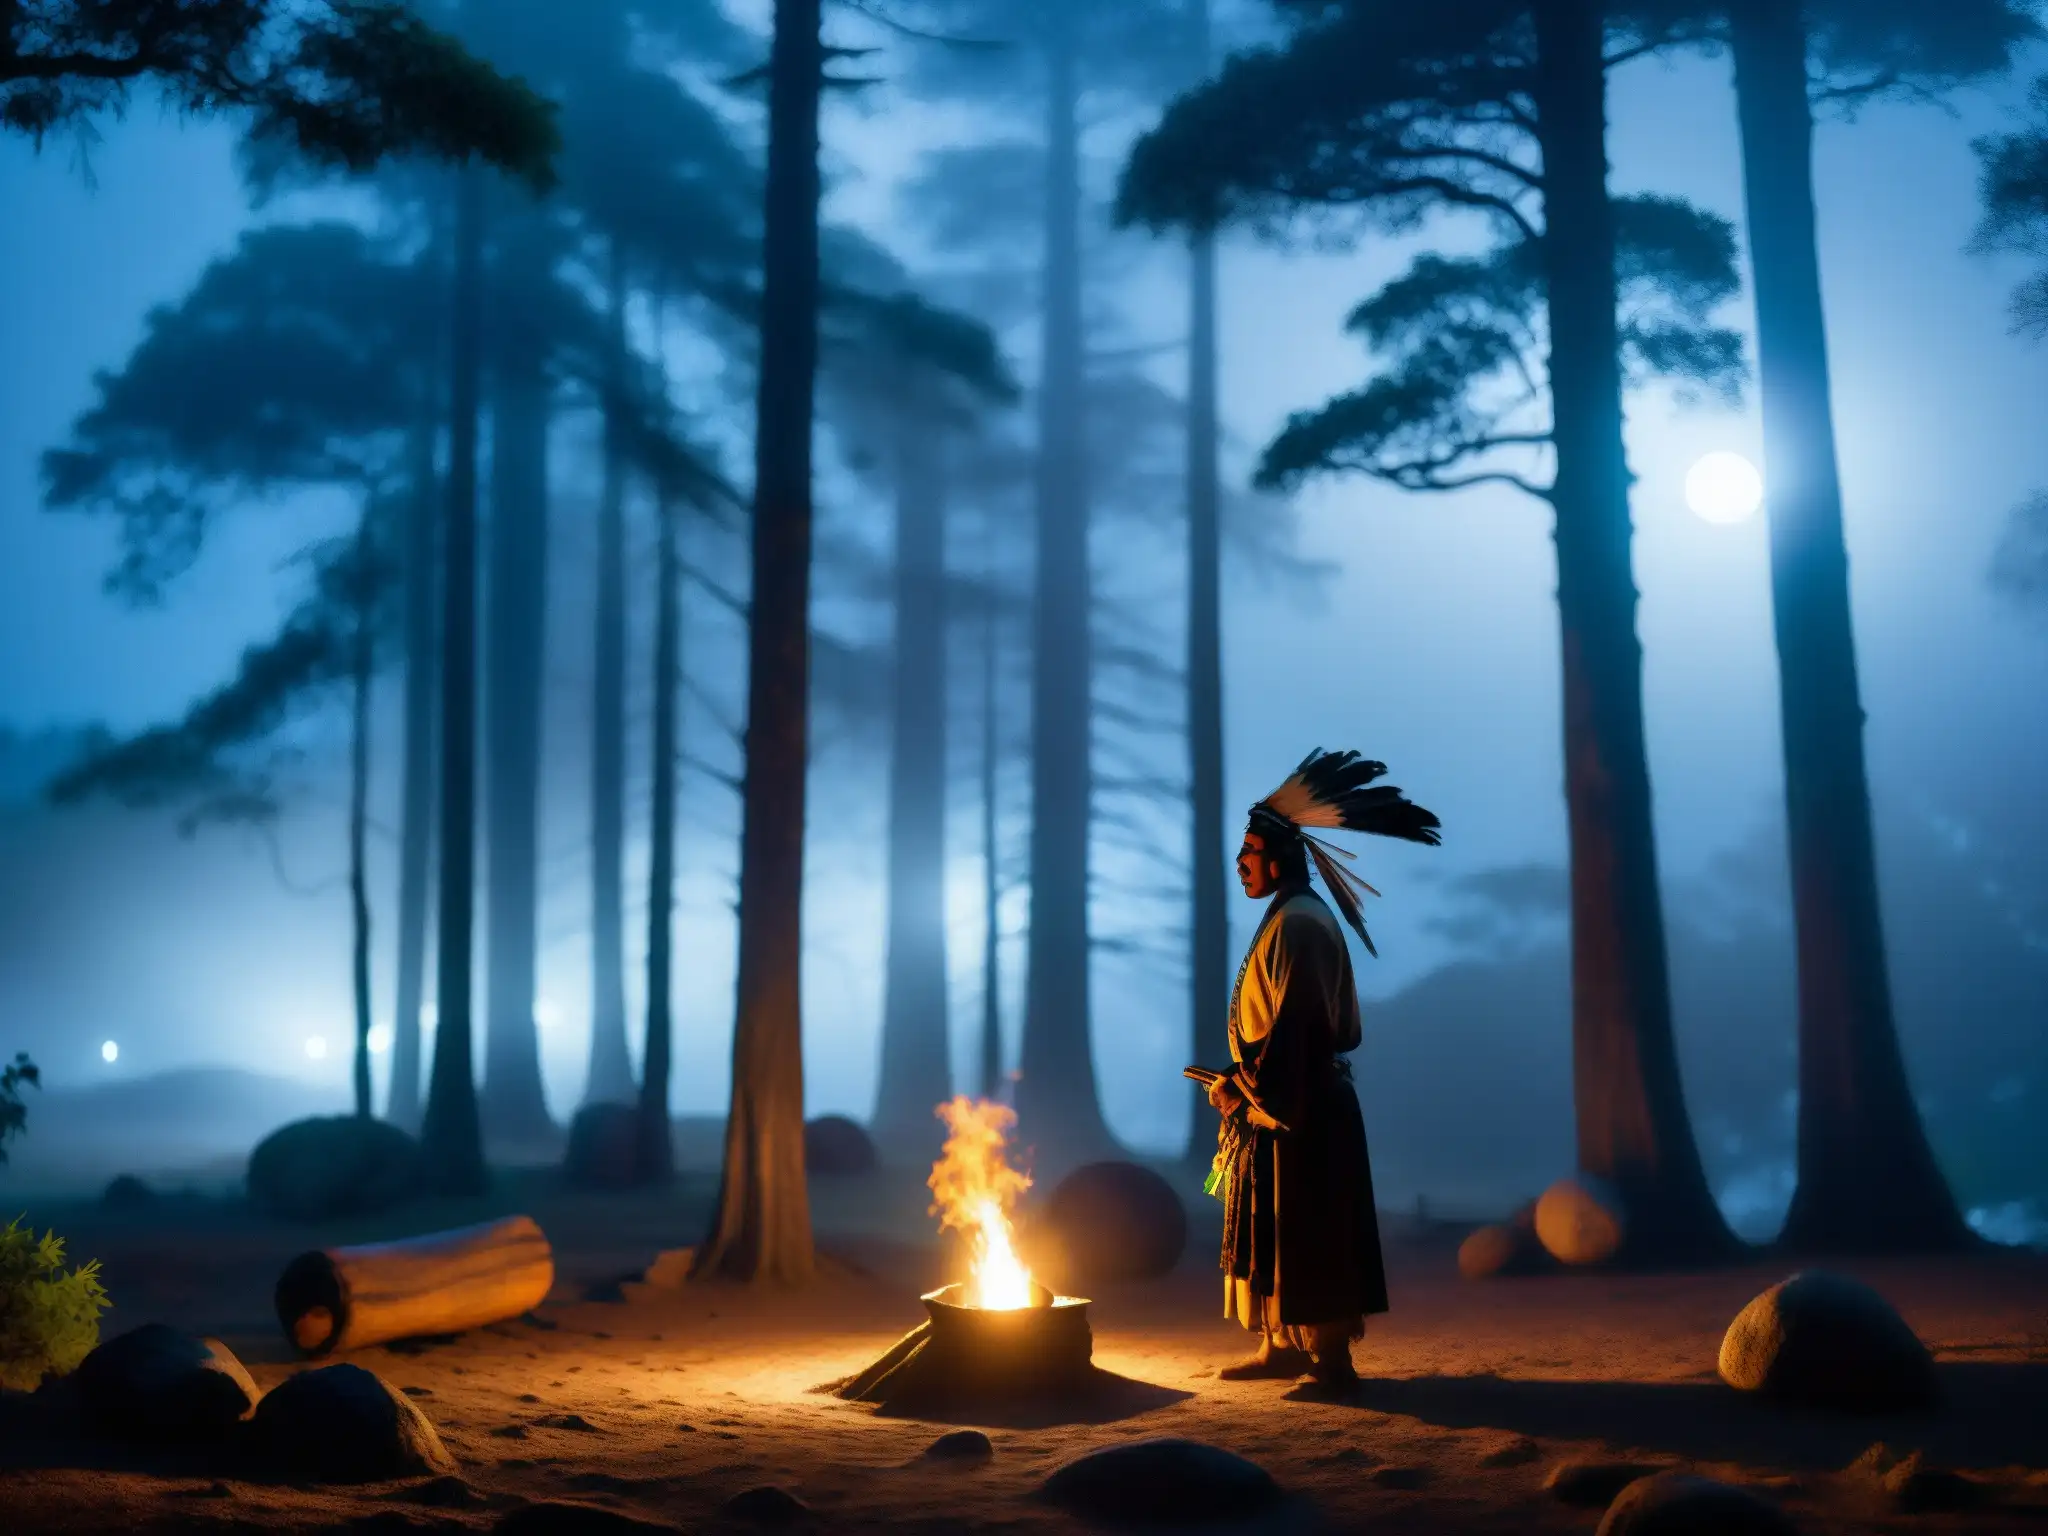 Un chamán realiza un ritual en un bosque iluminado por la luna, capturando la esencia de Nahualismo en leyendas indígenas mexicanas